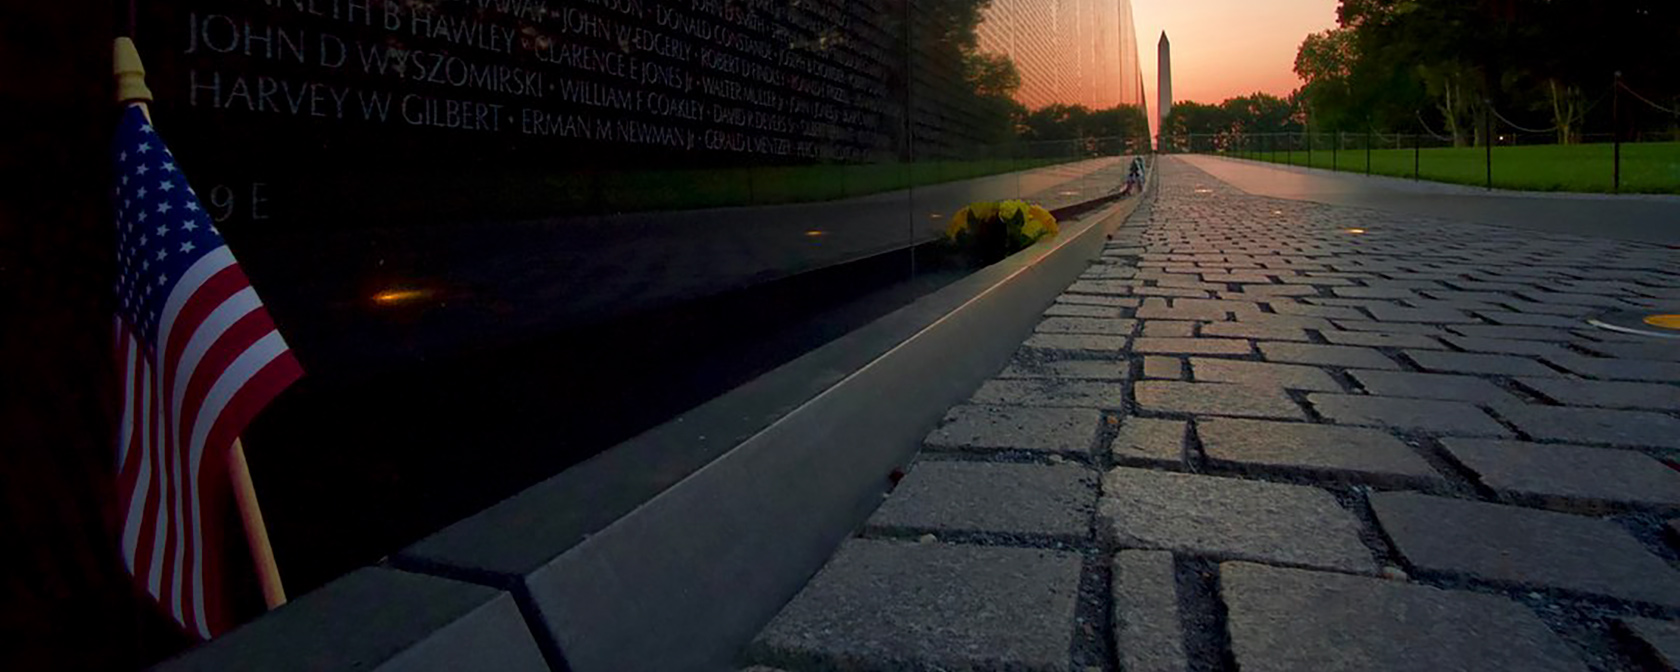 Memorial dos Veteranos do Vietnã ao nascer do sol